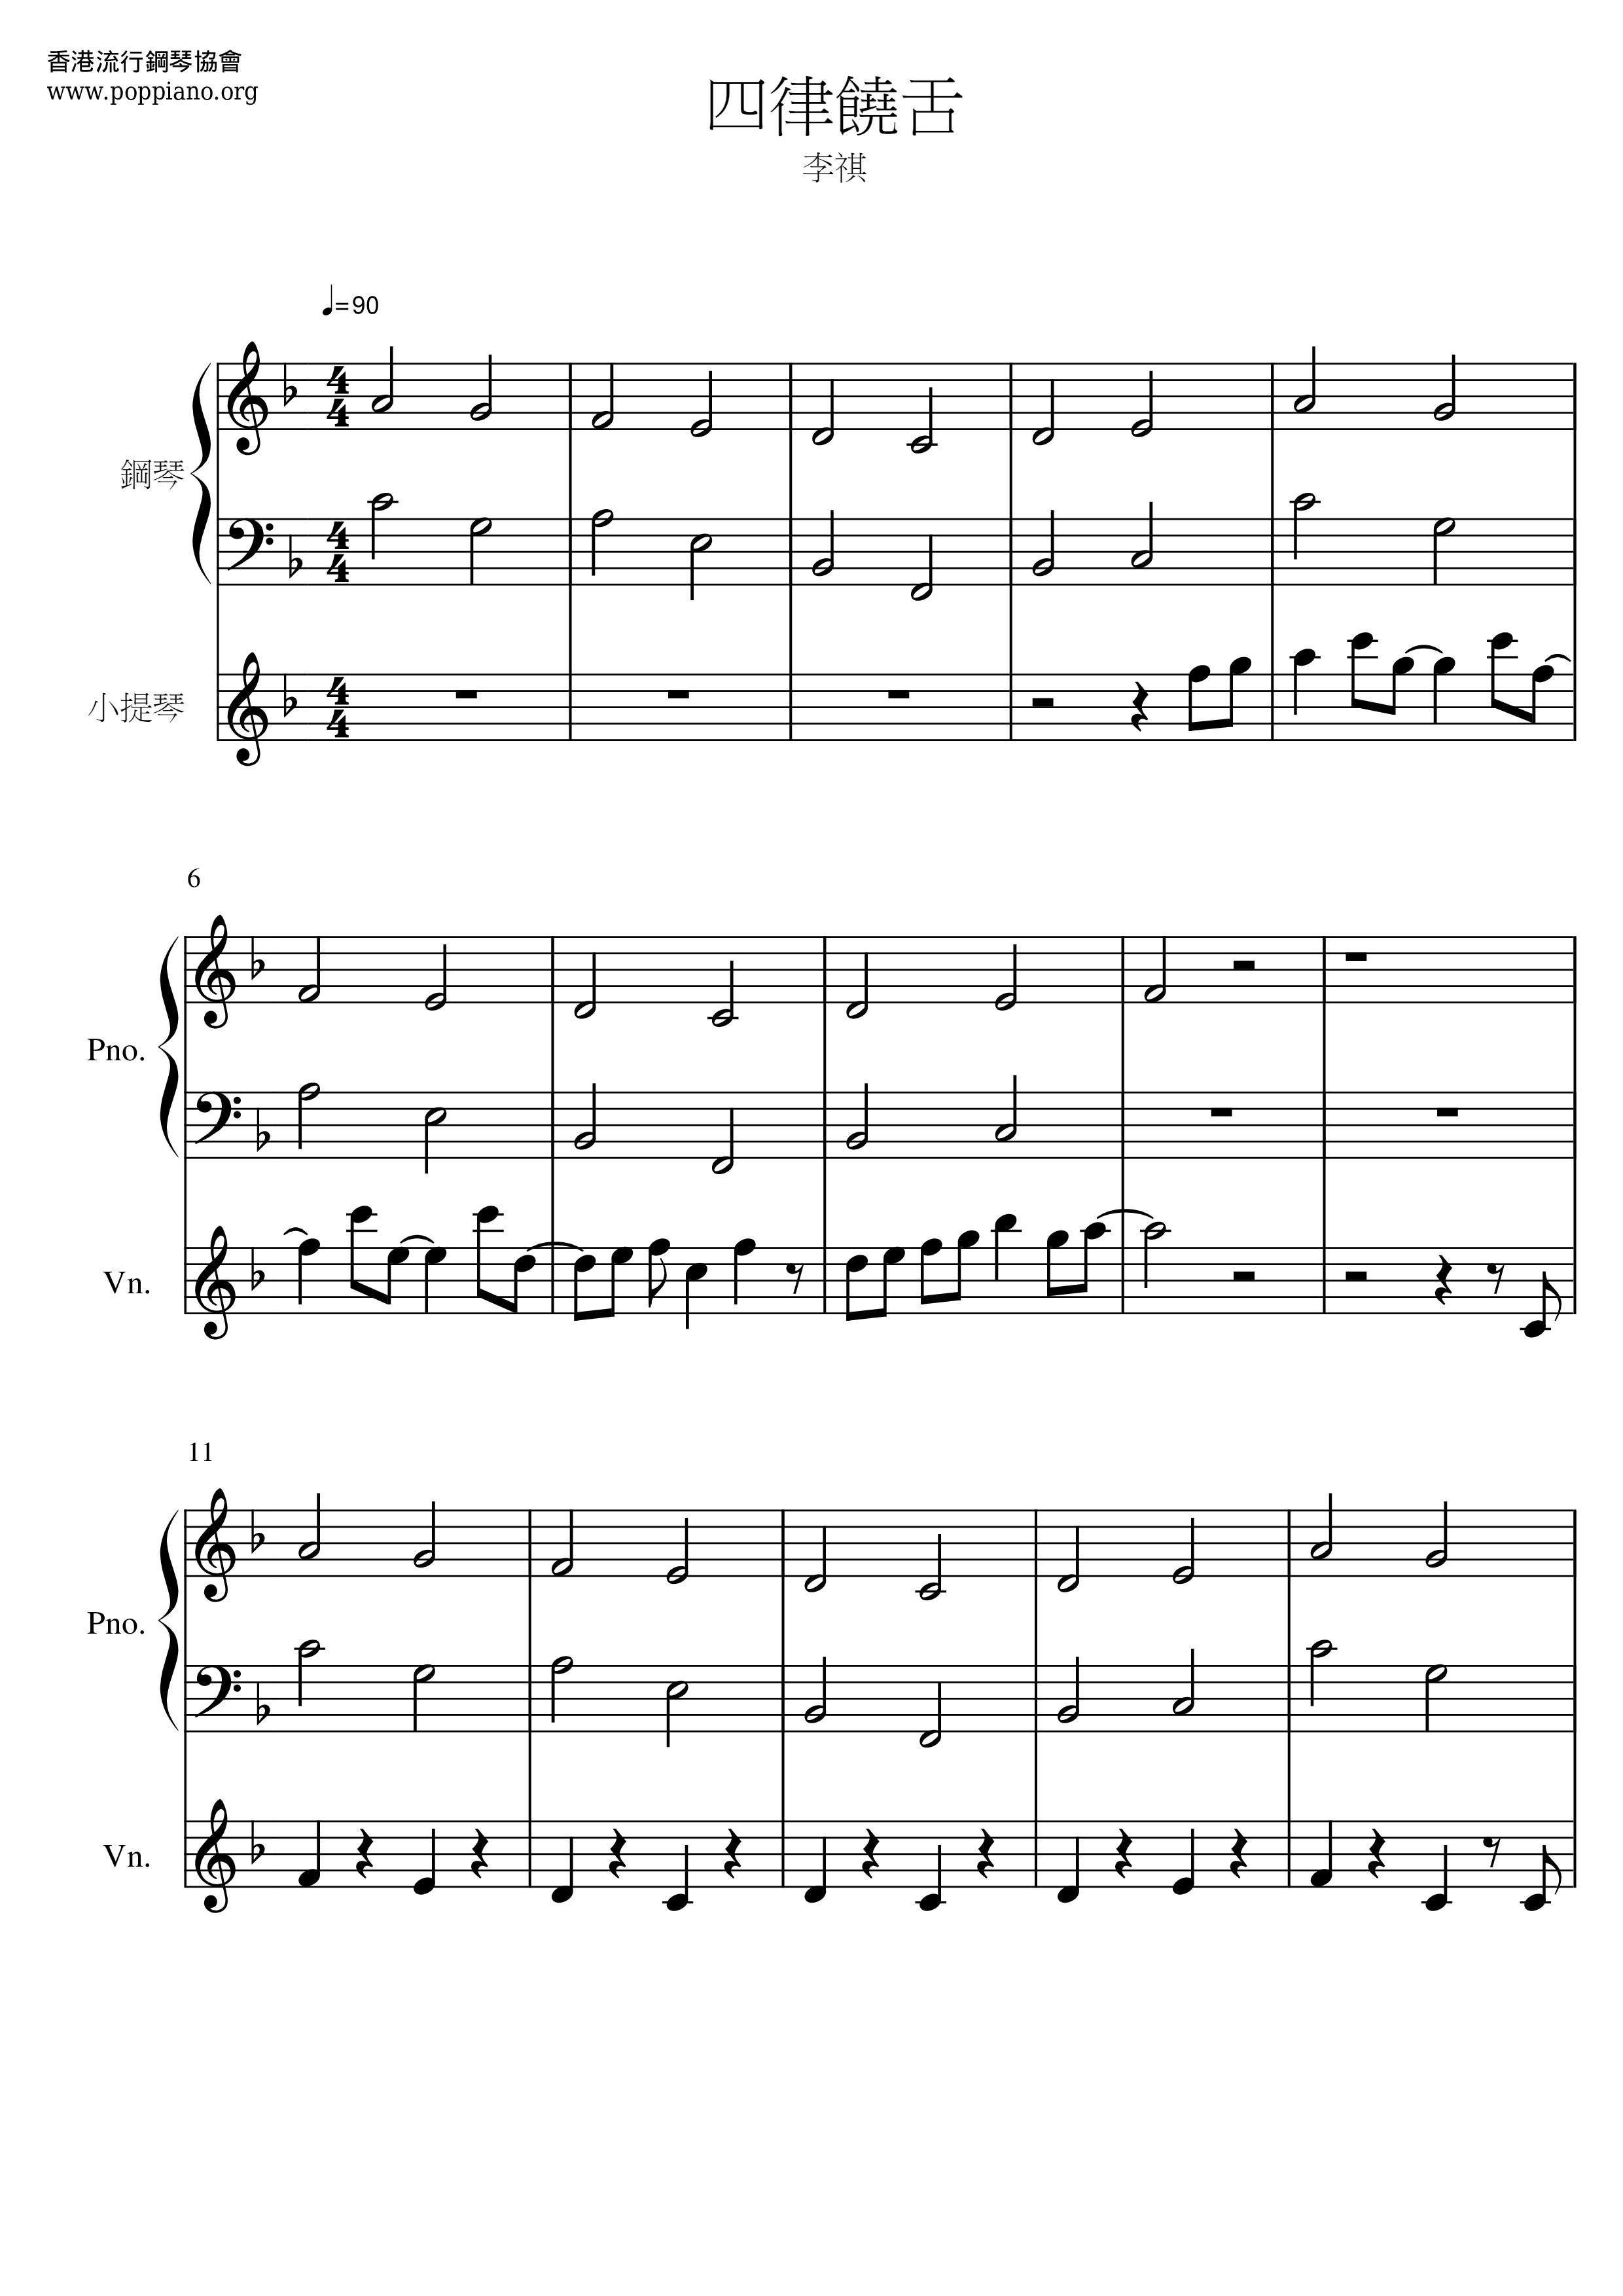 Four Rhythm Score